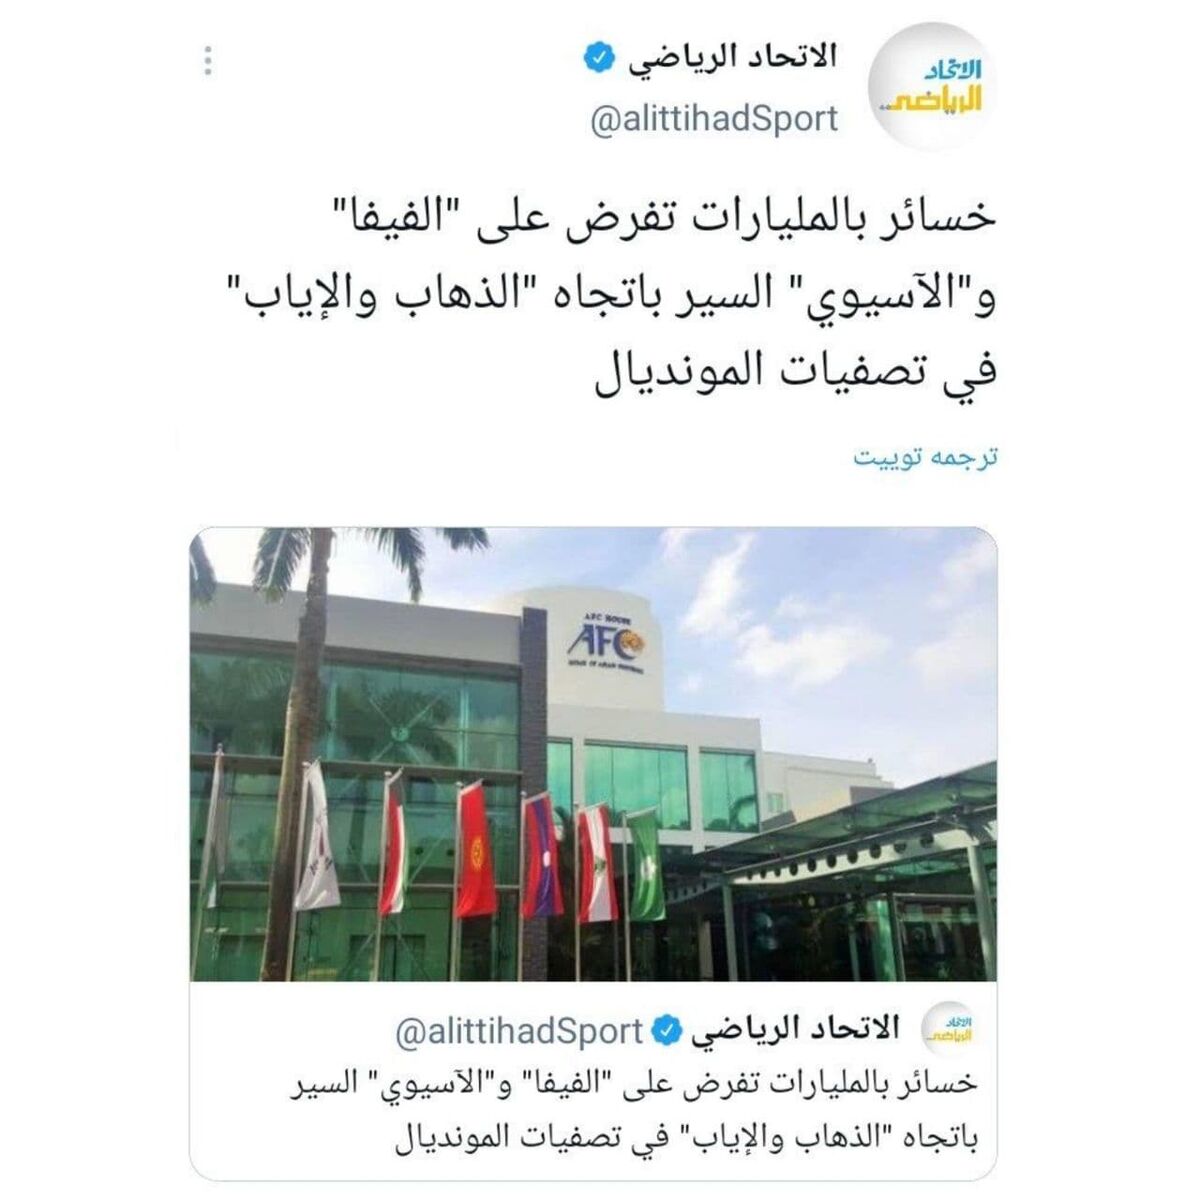 فیفا پیشنهاد AFC را رد کرد/ همه چی به نفع ایران شد